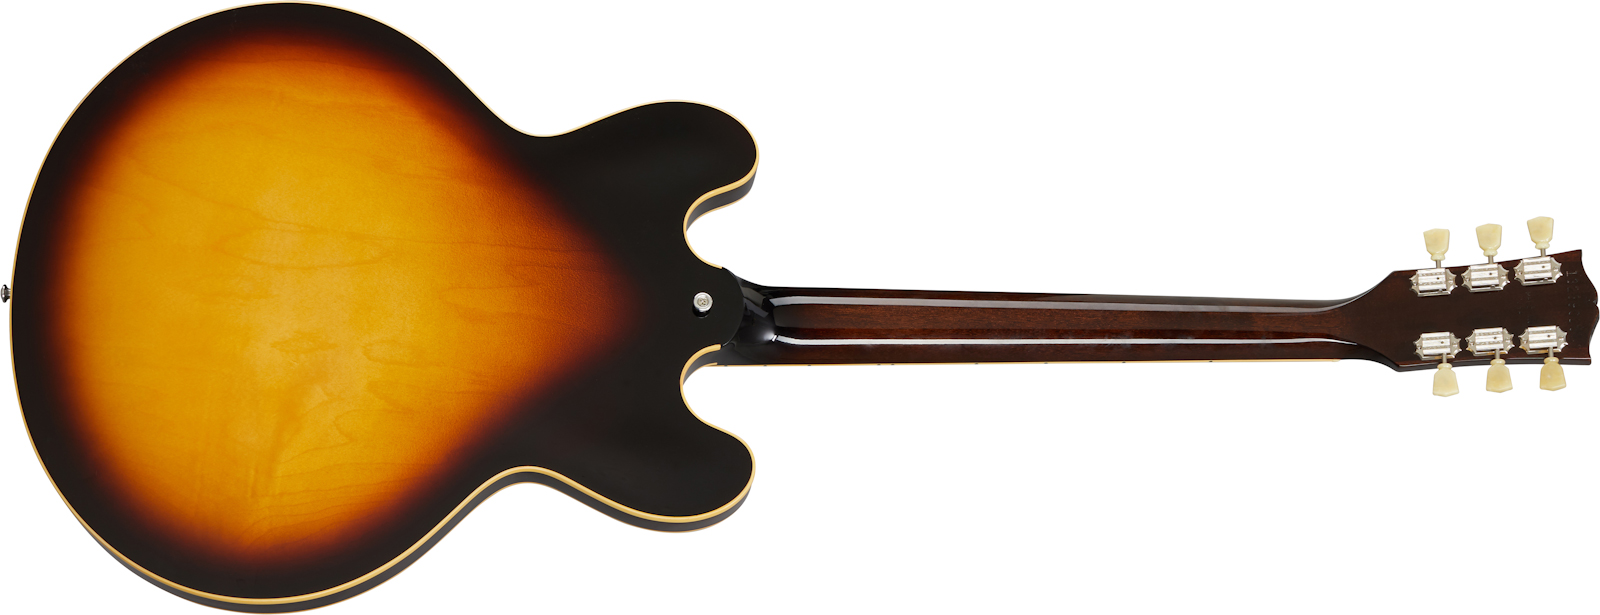 Gibson Es-345 Original 2020 2h Ht Rw - Vintage Burst - Semi hollow elektriche gitaar - Variation 1